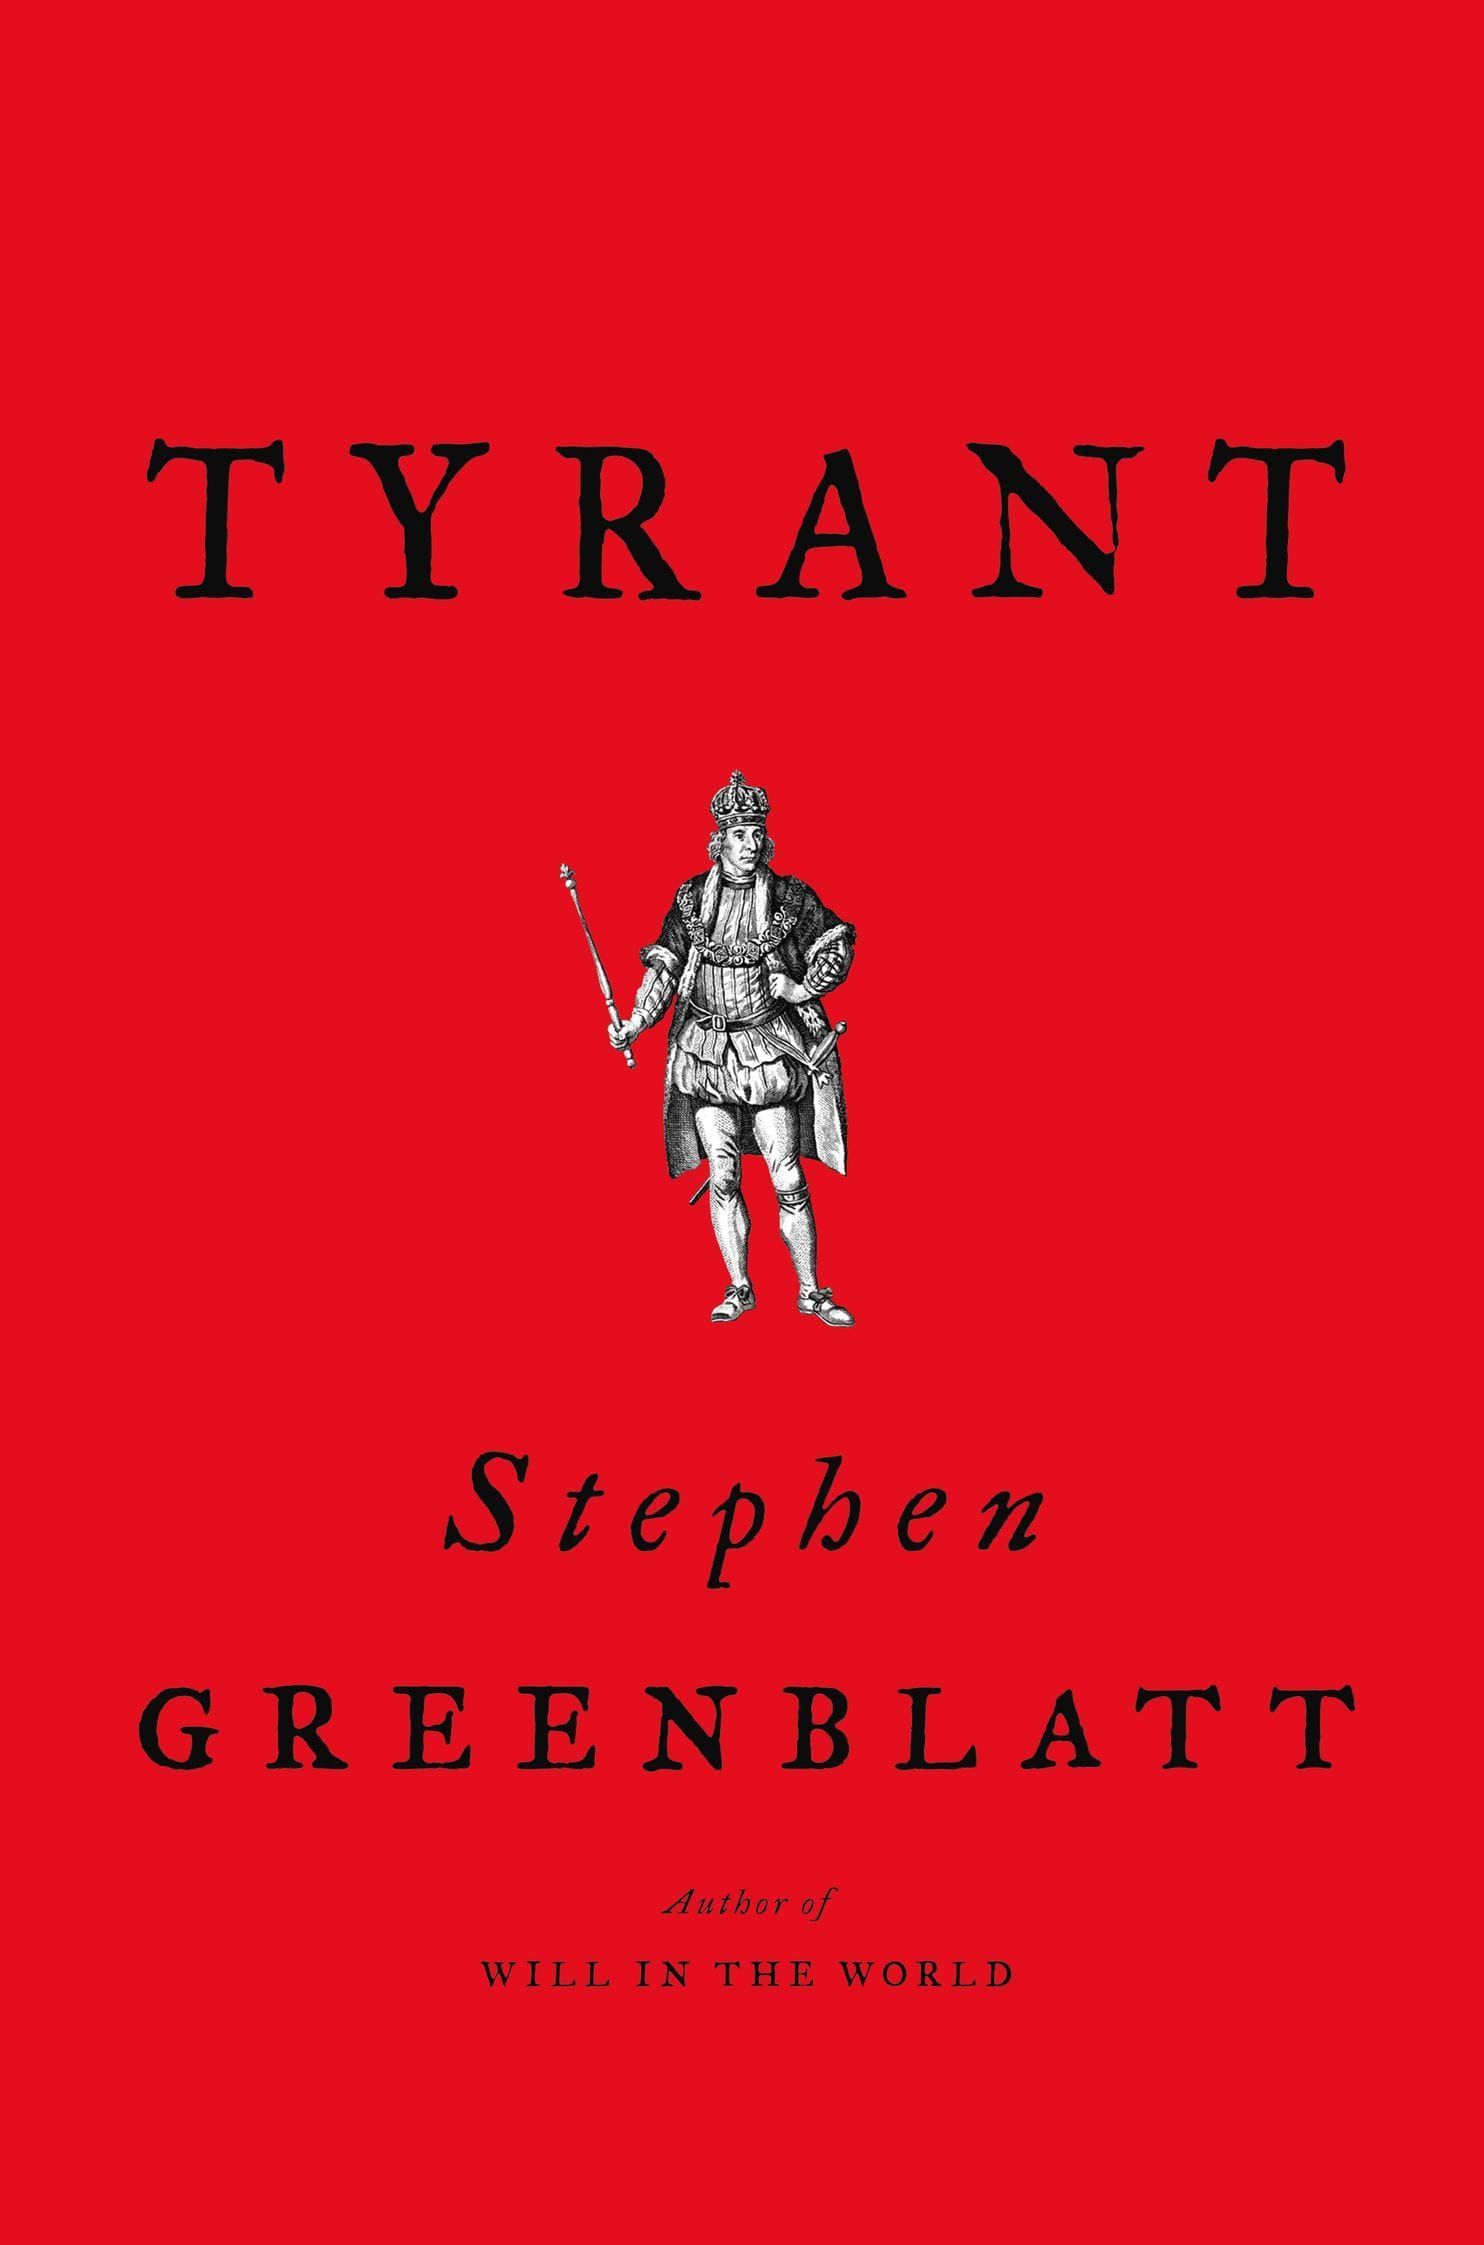 Fashion It Thus: Stephen Greenblatt’s “Tyrant”